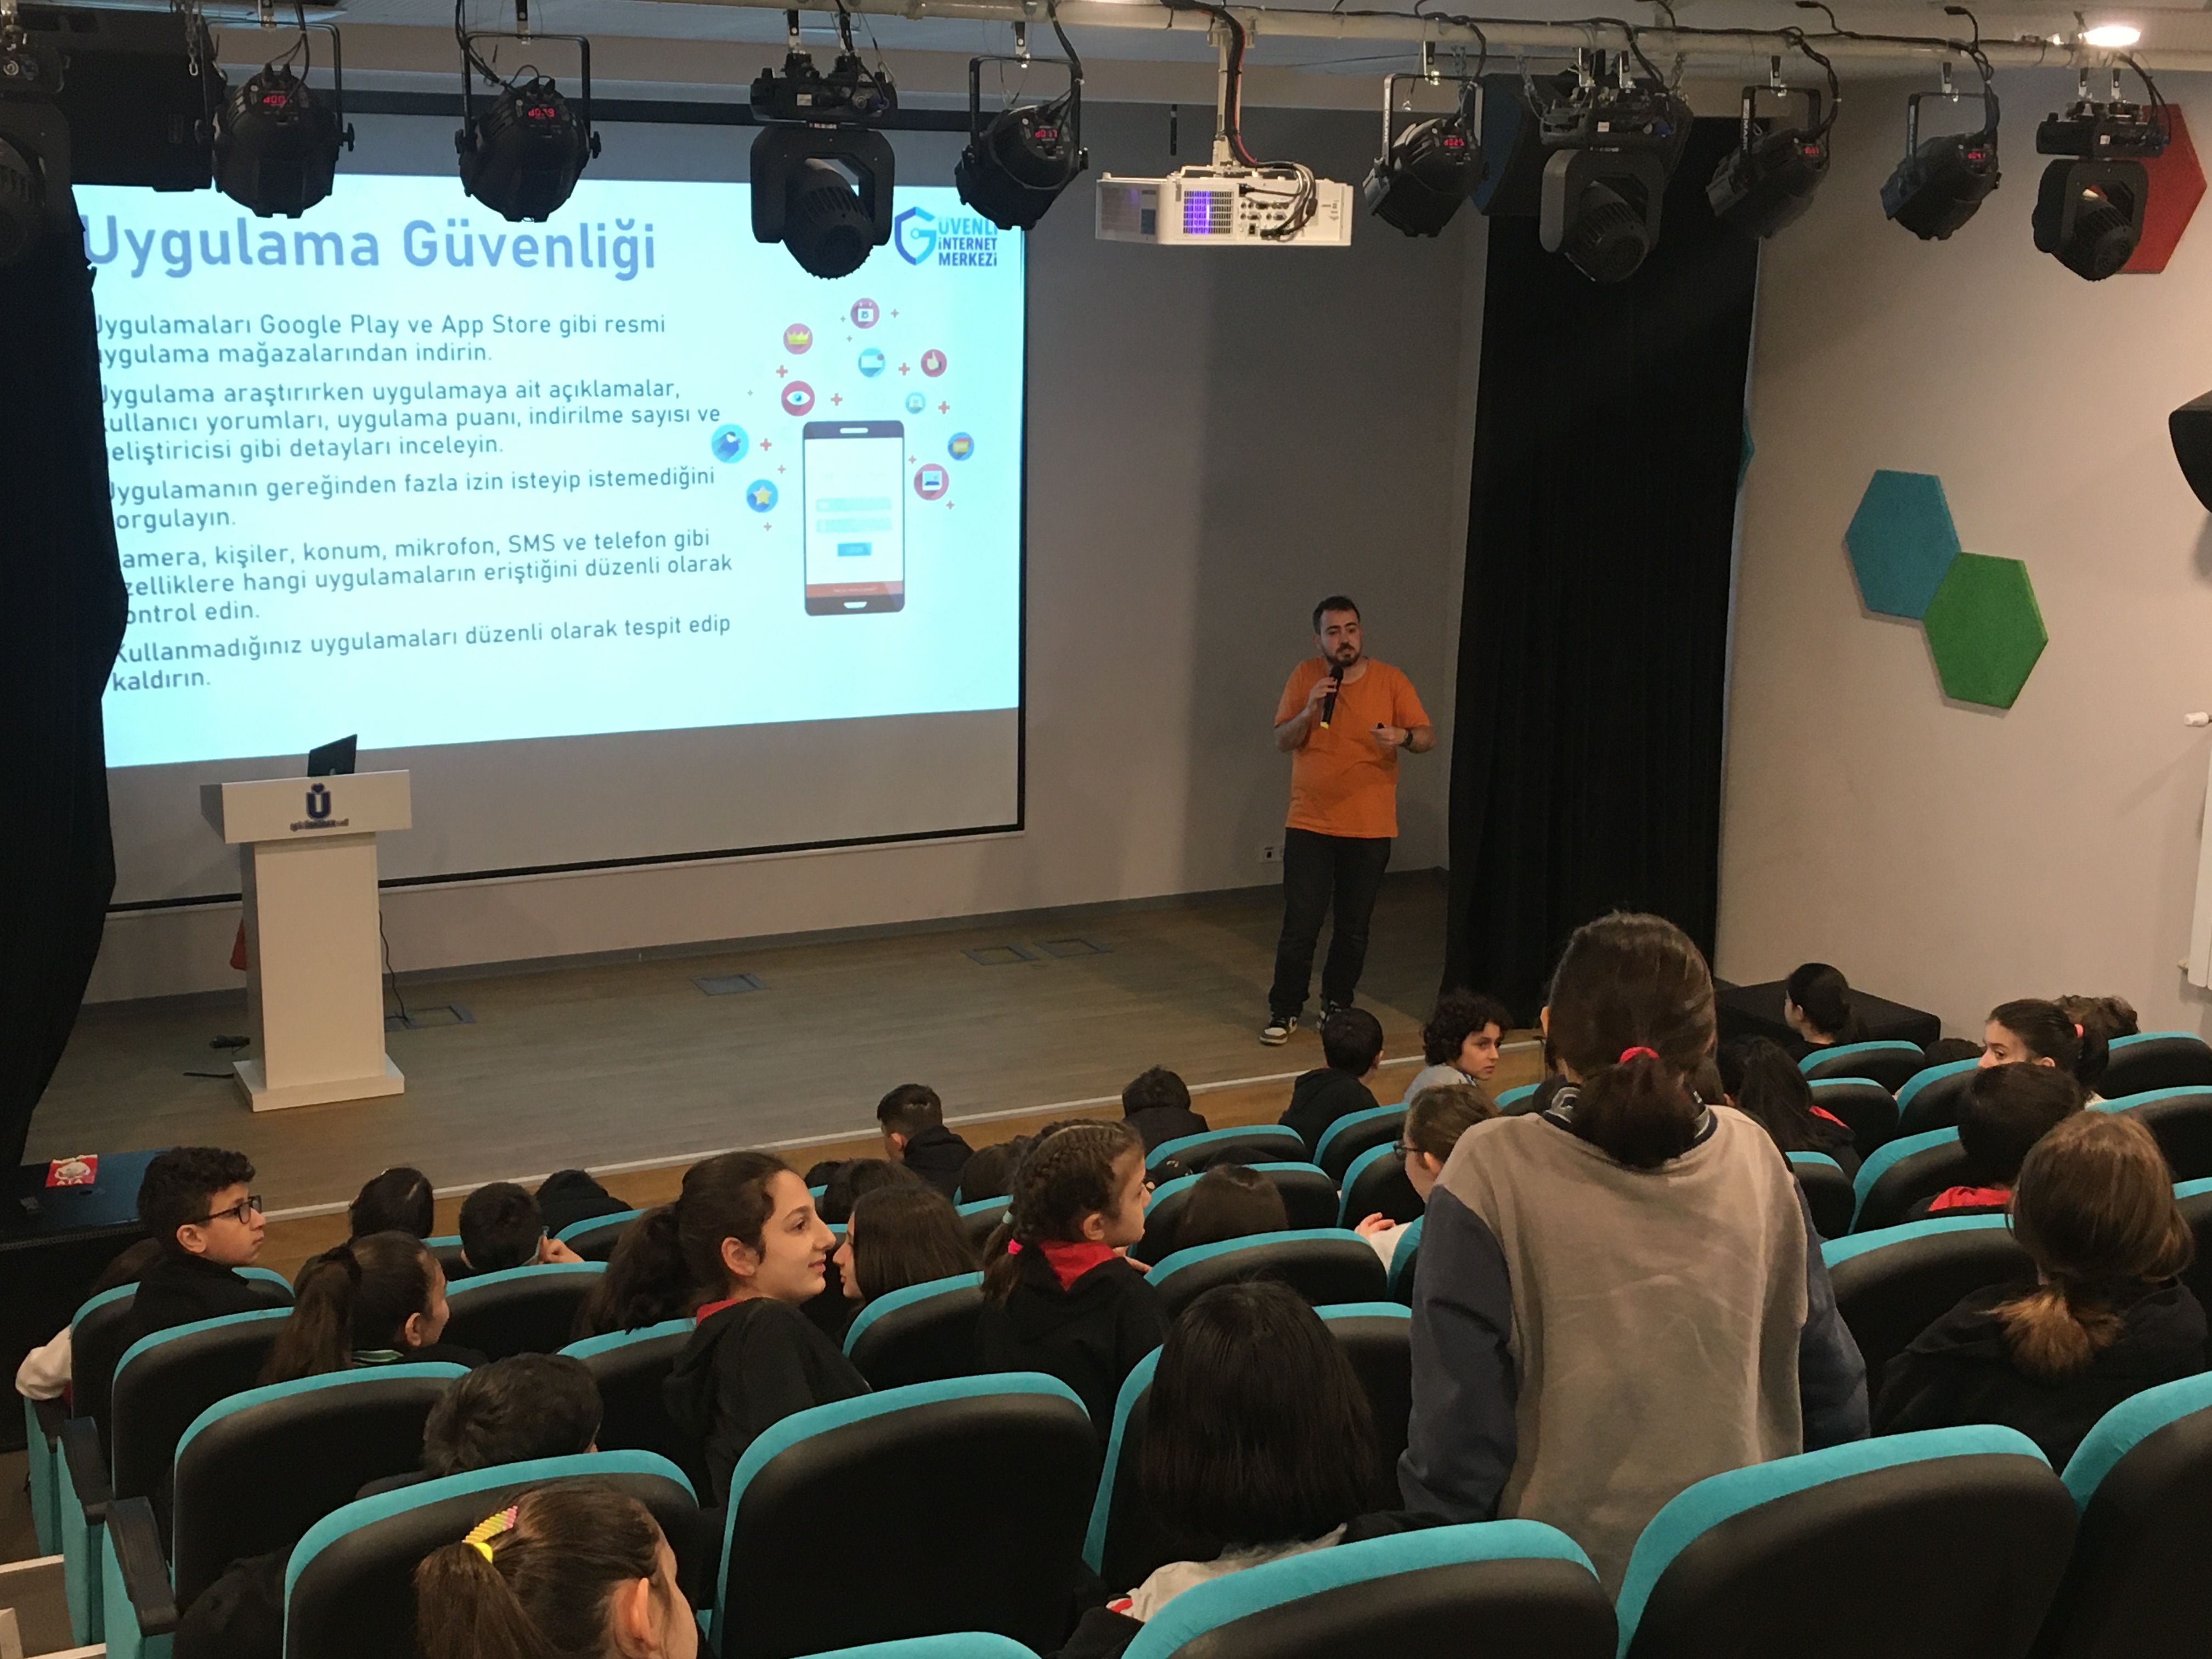 İstanbul Üsküdar Lütfi Erçin Ortaokulu Öğrencilerine Yönelik Bilinçli ve Güvenli İnternet Kullanımı Semineri